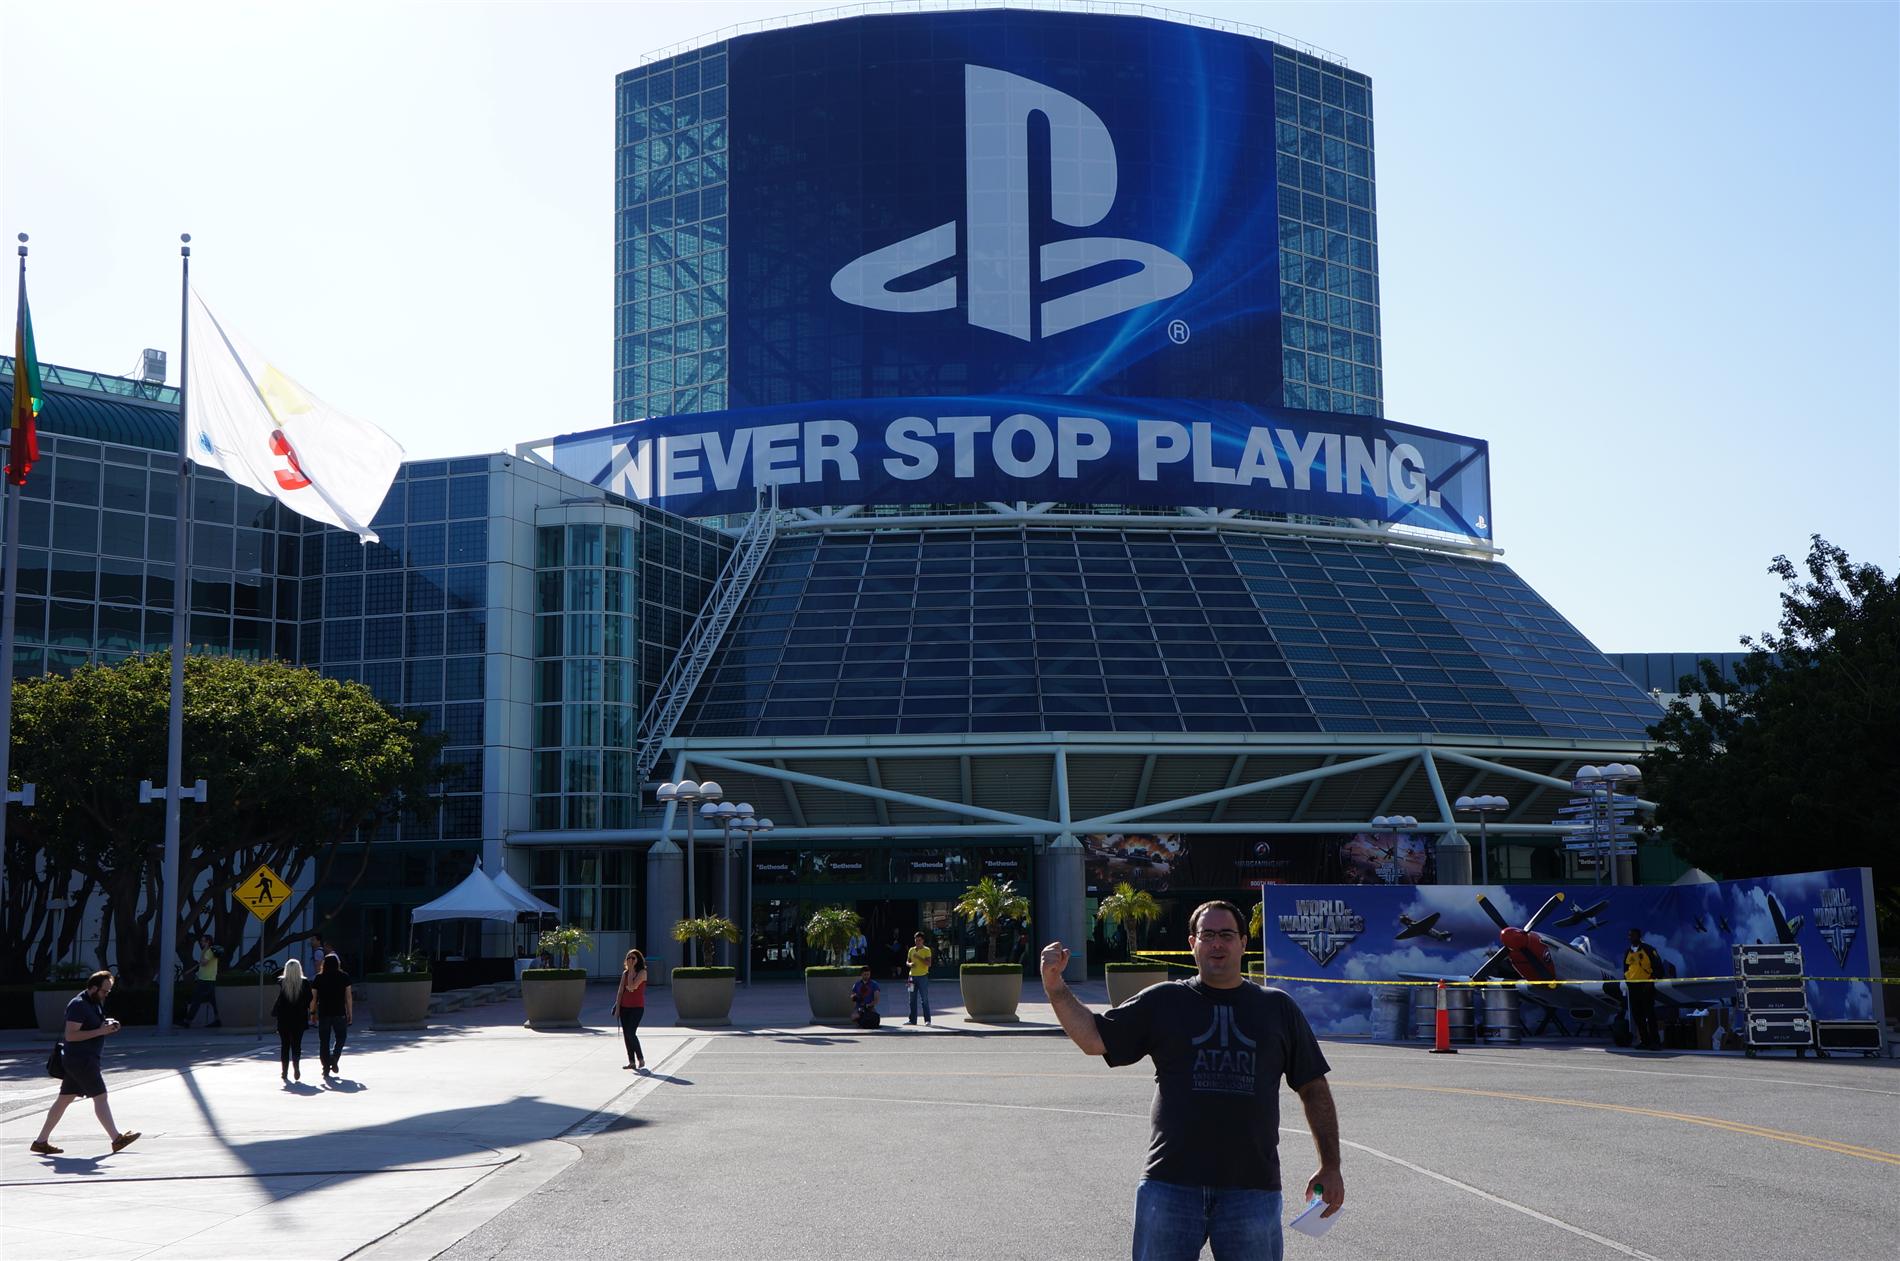 Entrada E3 2012